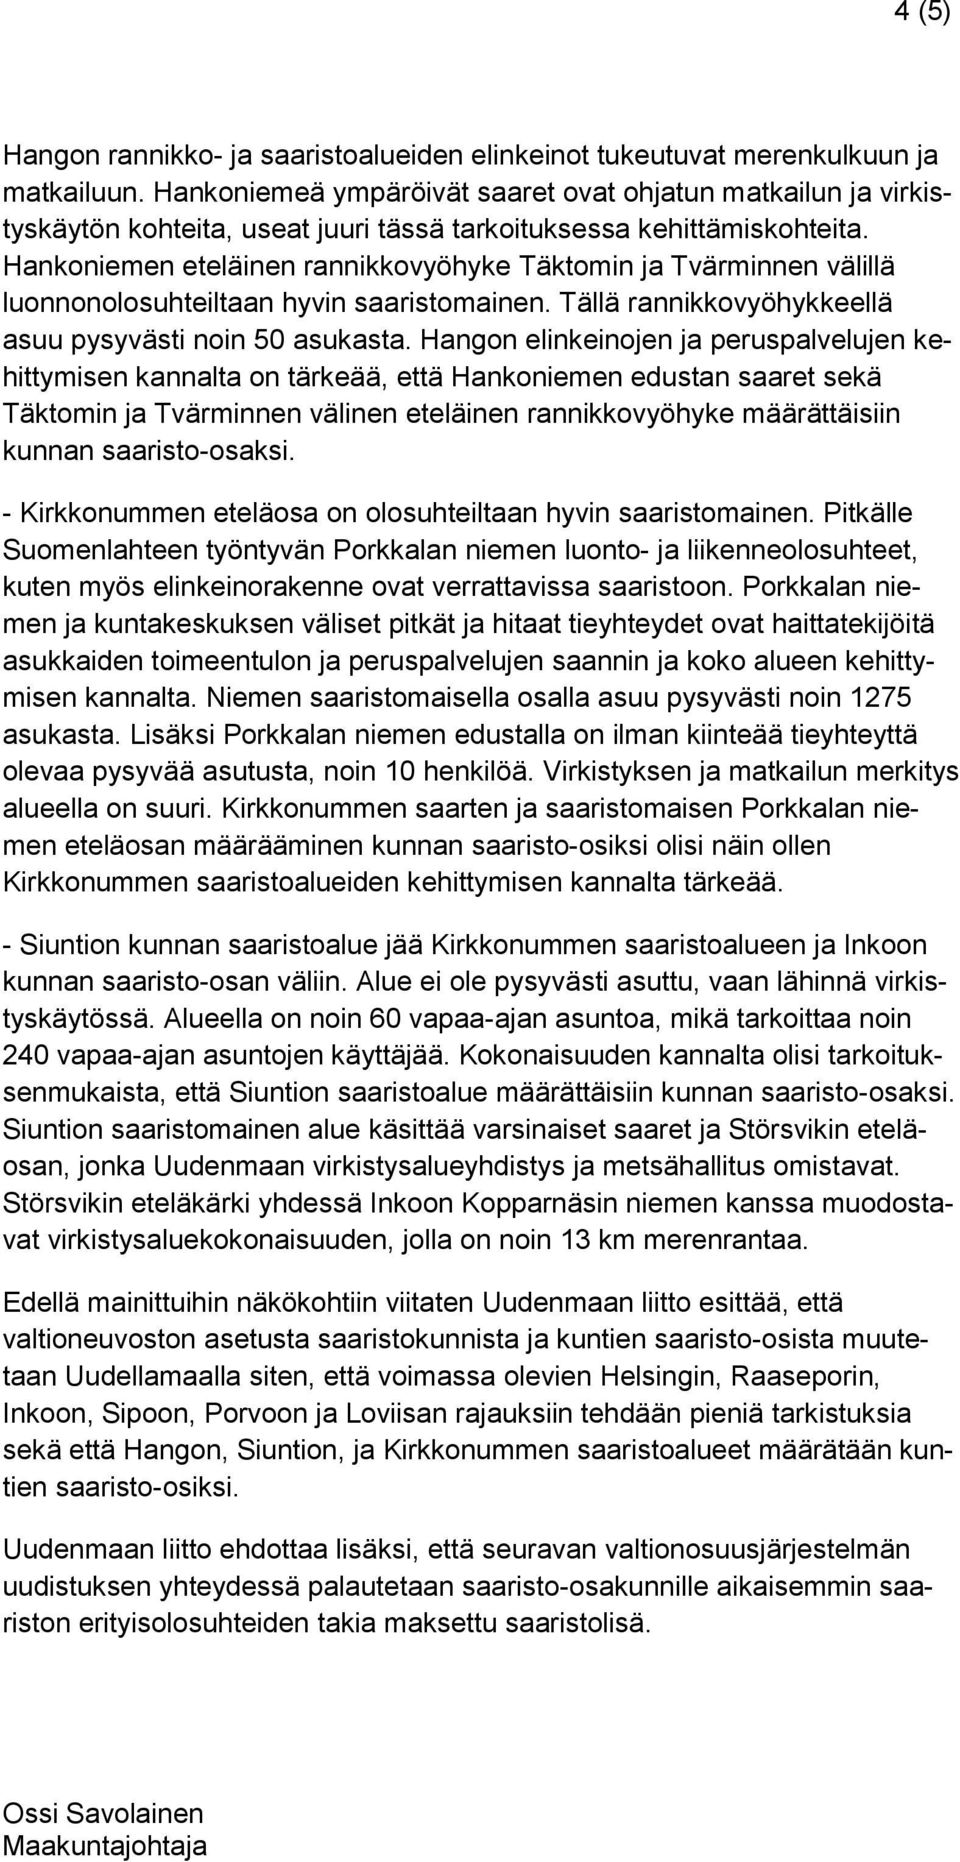 Hankoniemen eteläinen rannikkovyöhyke Täktomin ja Tvärminnen välillä luonnonolosuhteiltaan hyvin saaristomainen. Tällä rannikkovyöhykkeellä asuu pysyvästi noin 50 asukasta.